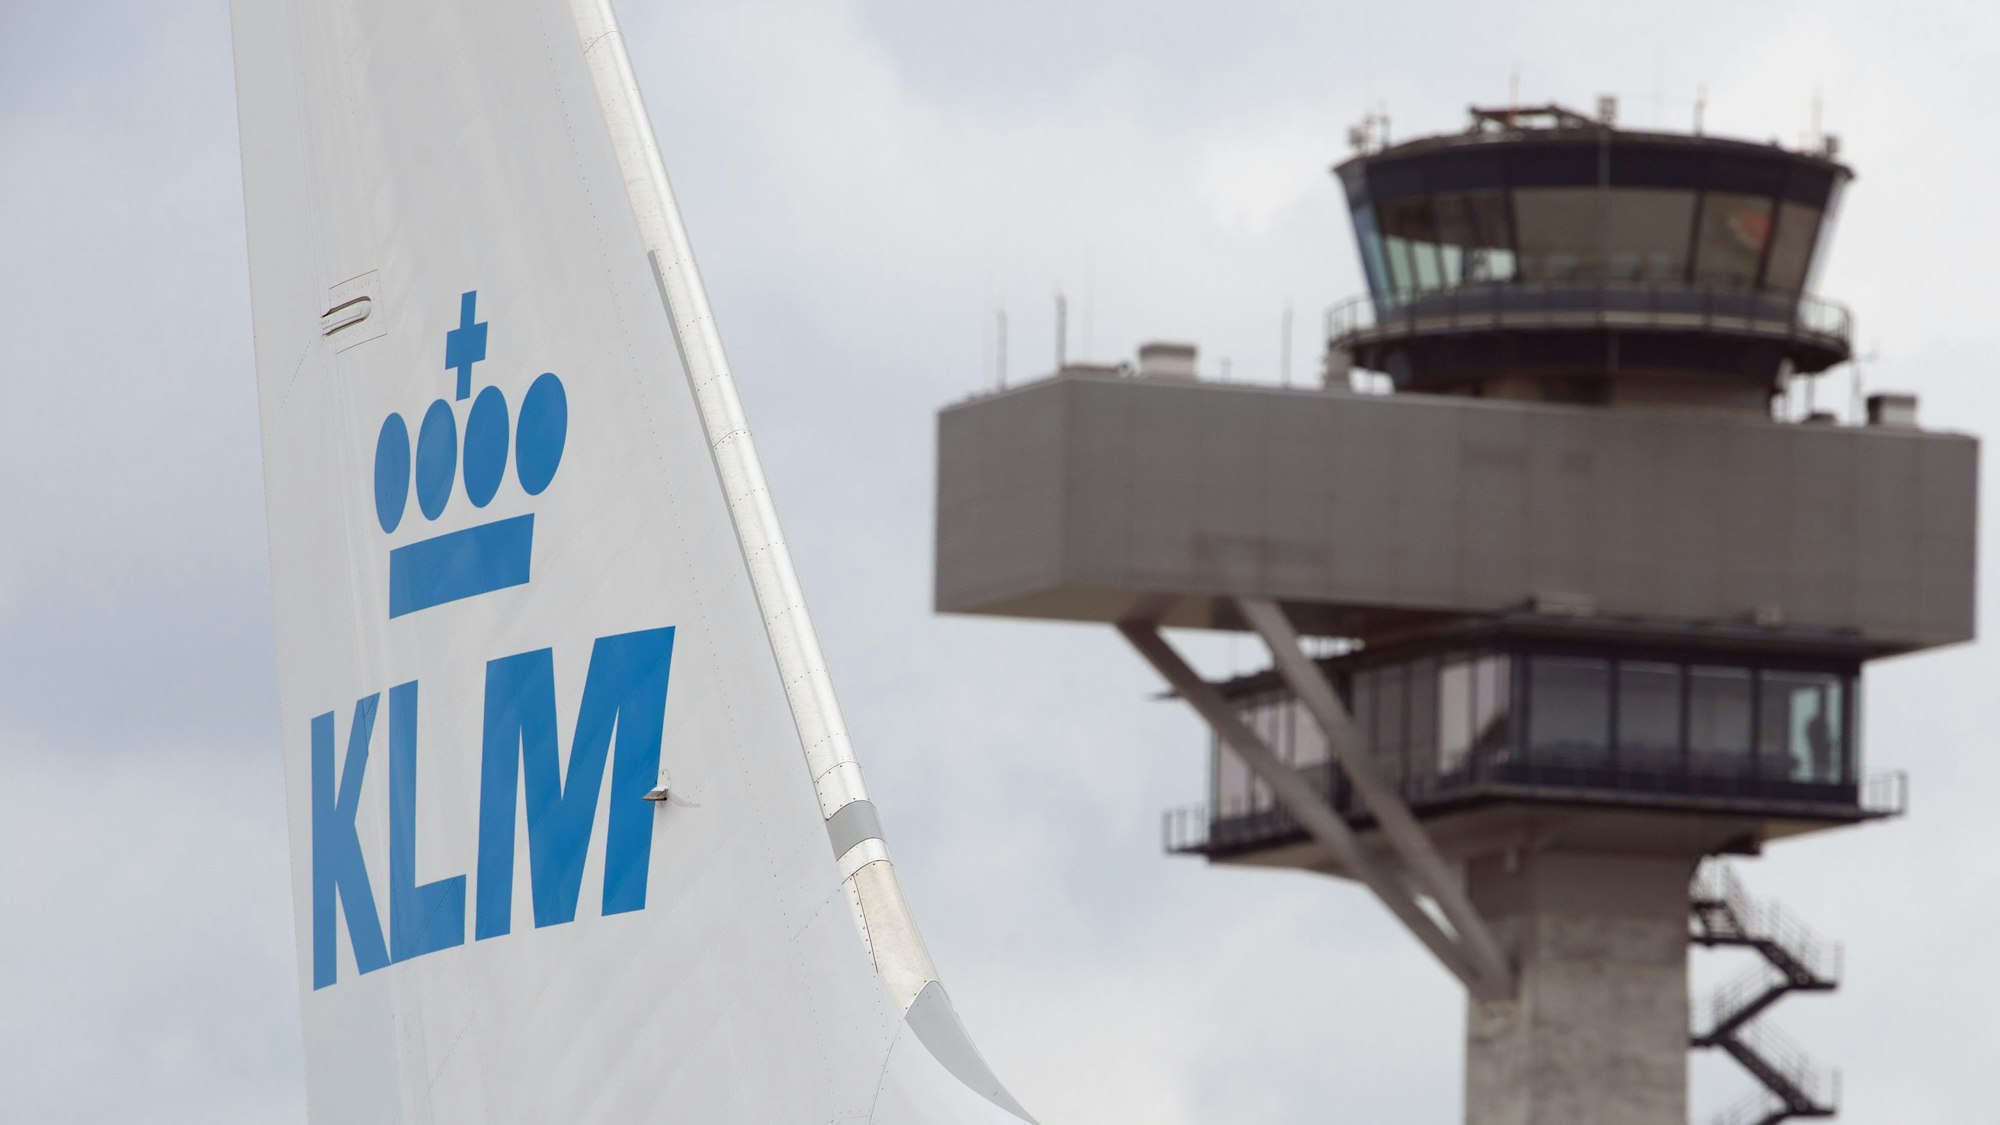 Eine Boeing 737 der niederländischen Fluggesellschaft KLM steht auf einem Rollfeld. Im Hintergrund ist ein Flughafen-Tower zu sehen.